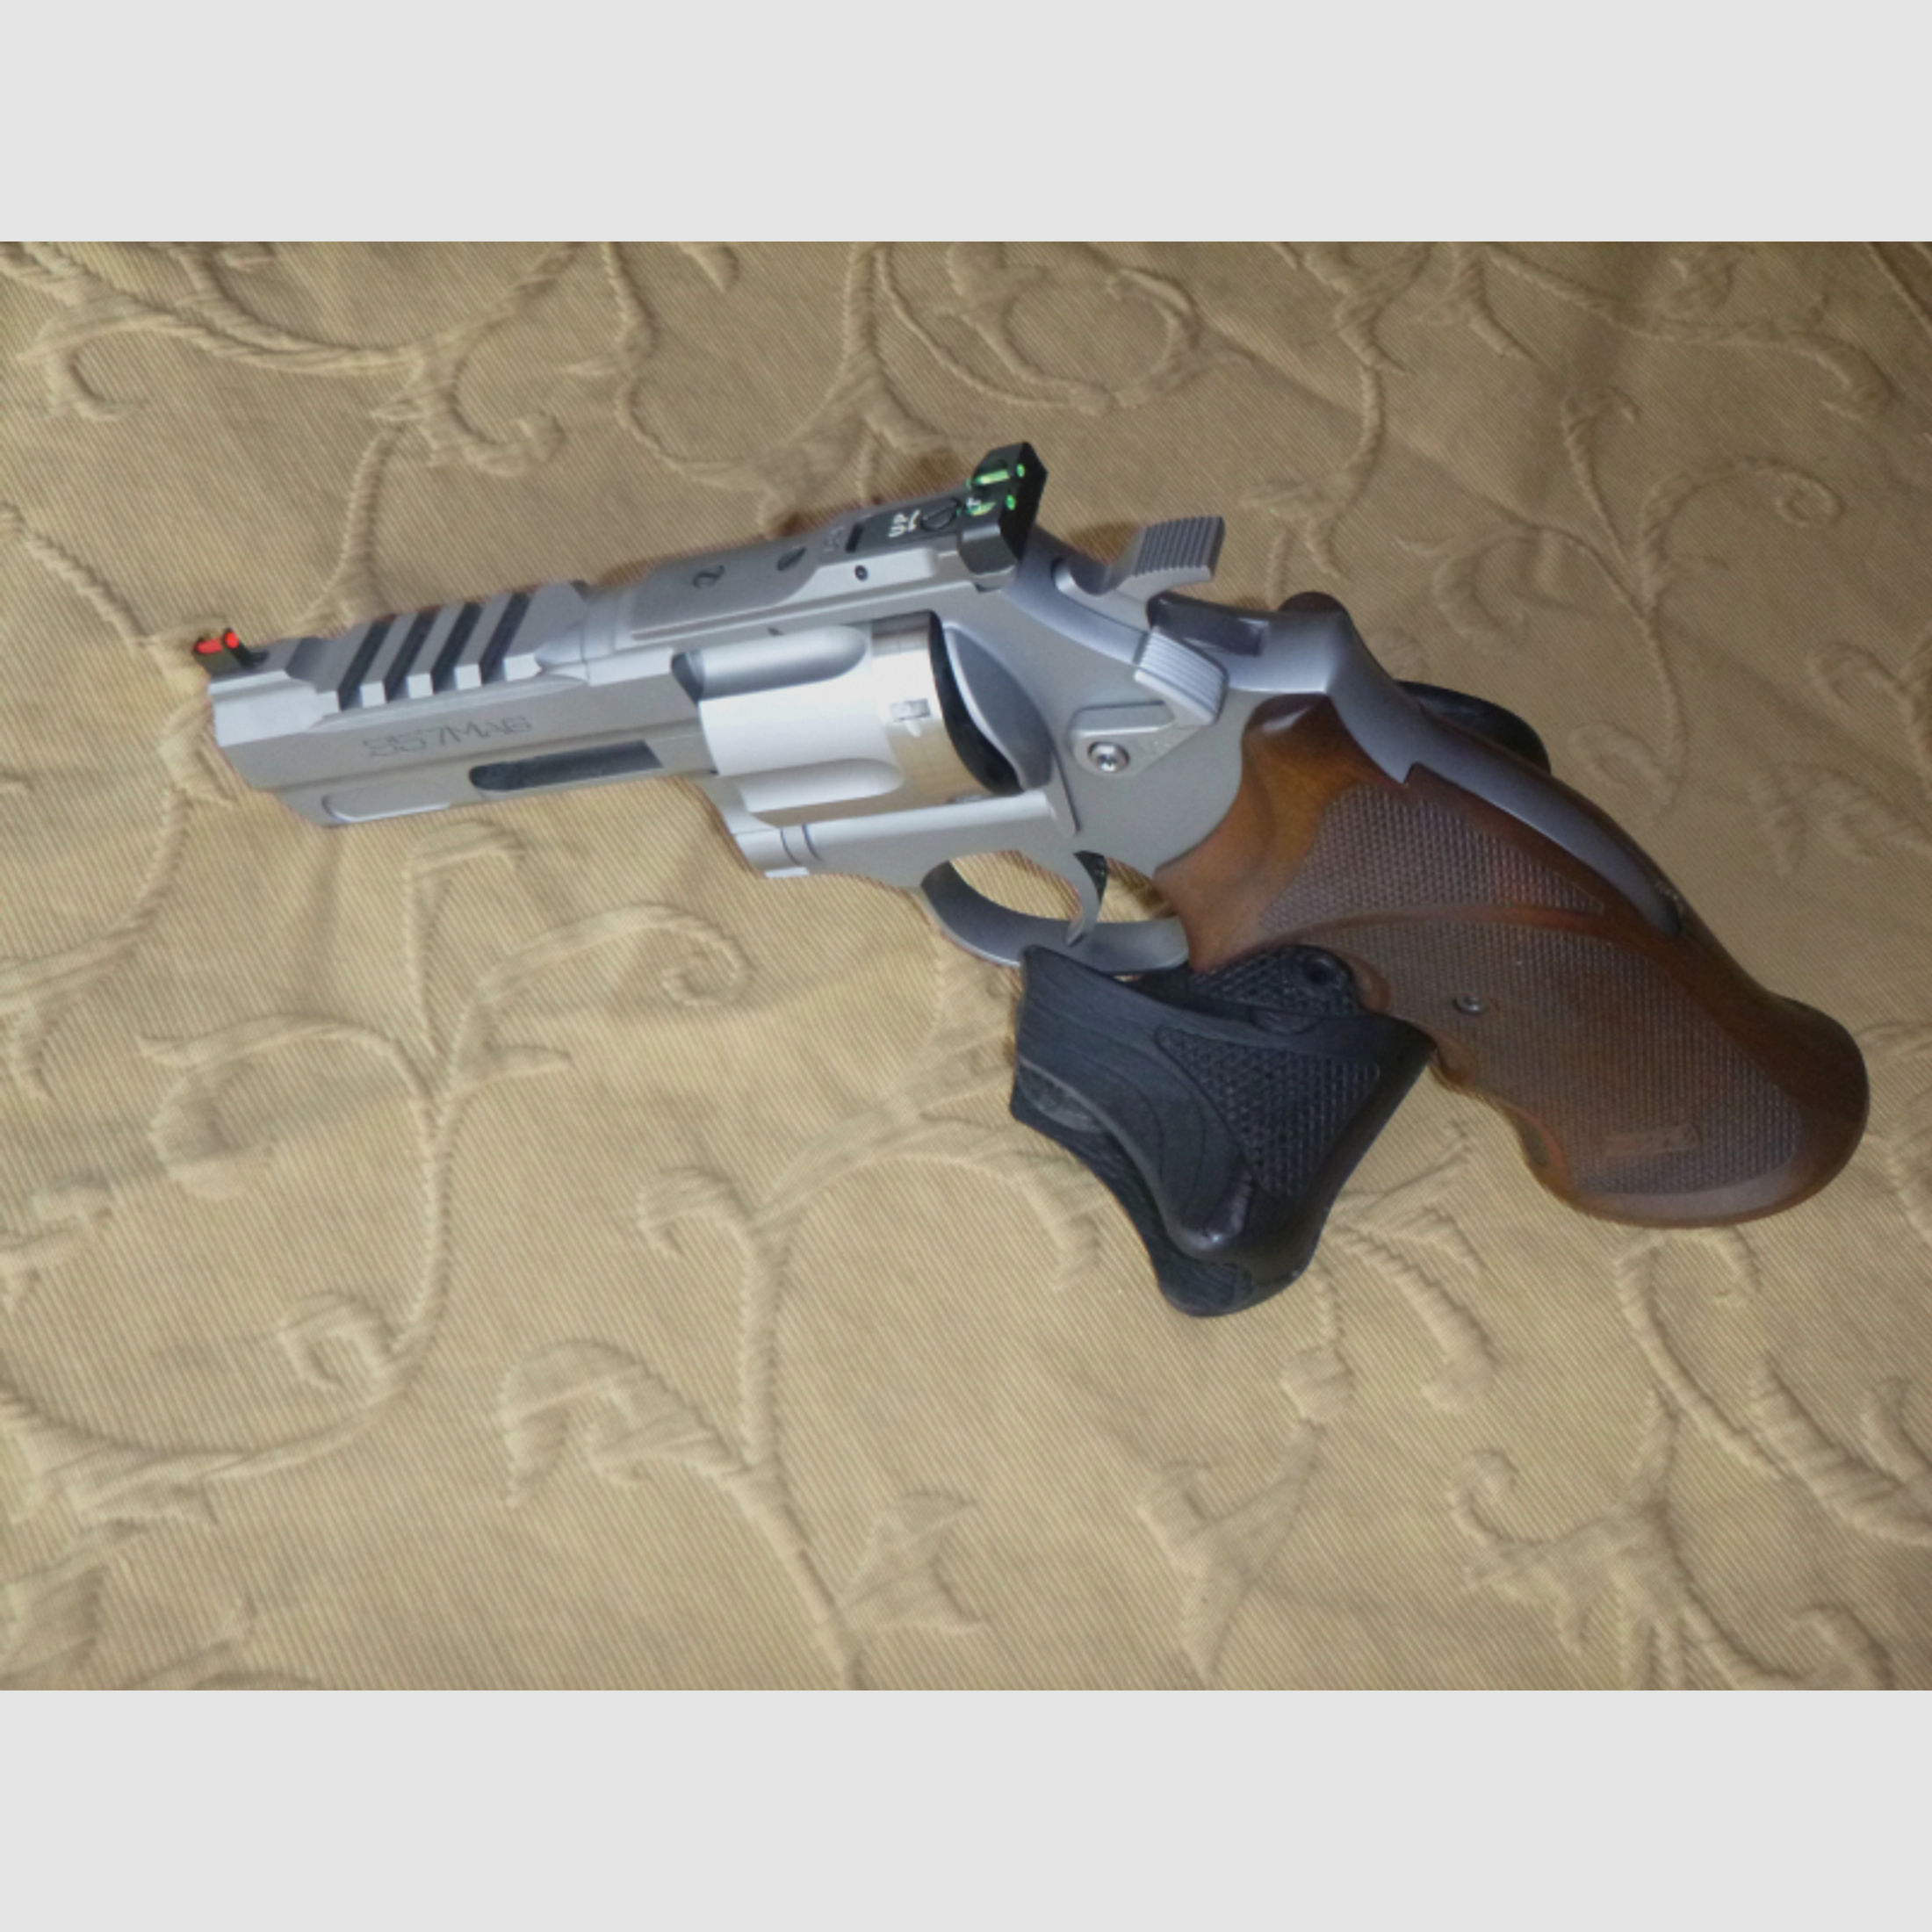 Spohr 284 Carry Stainless 4" Revolver .357Mag